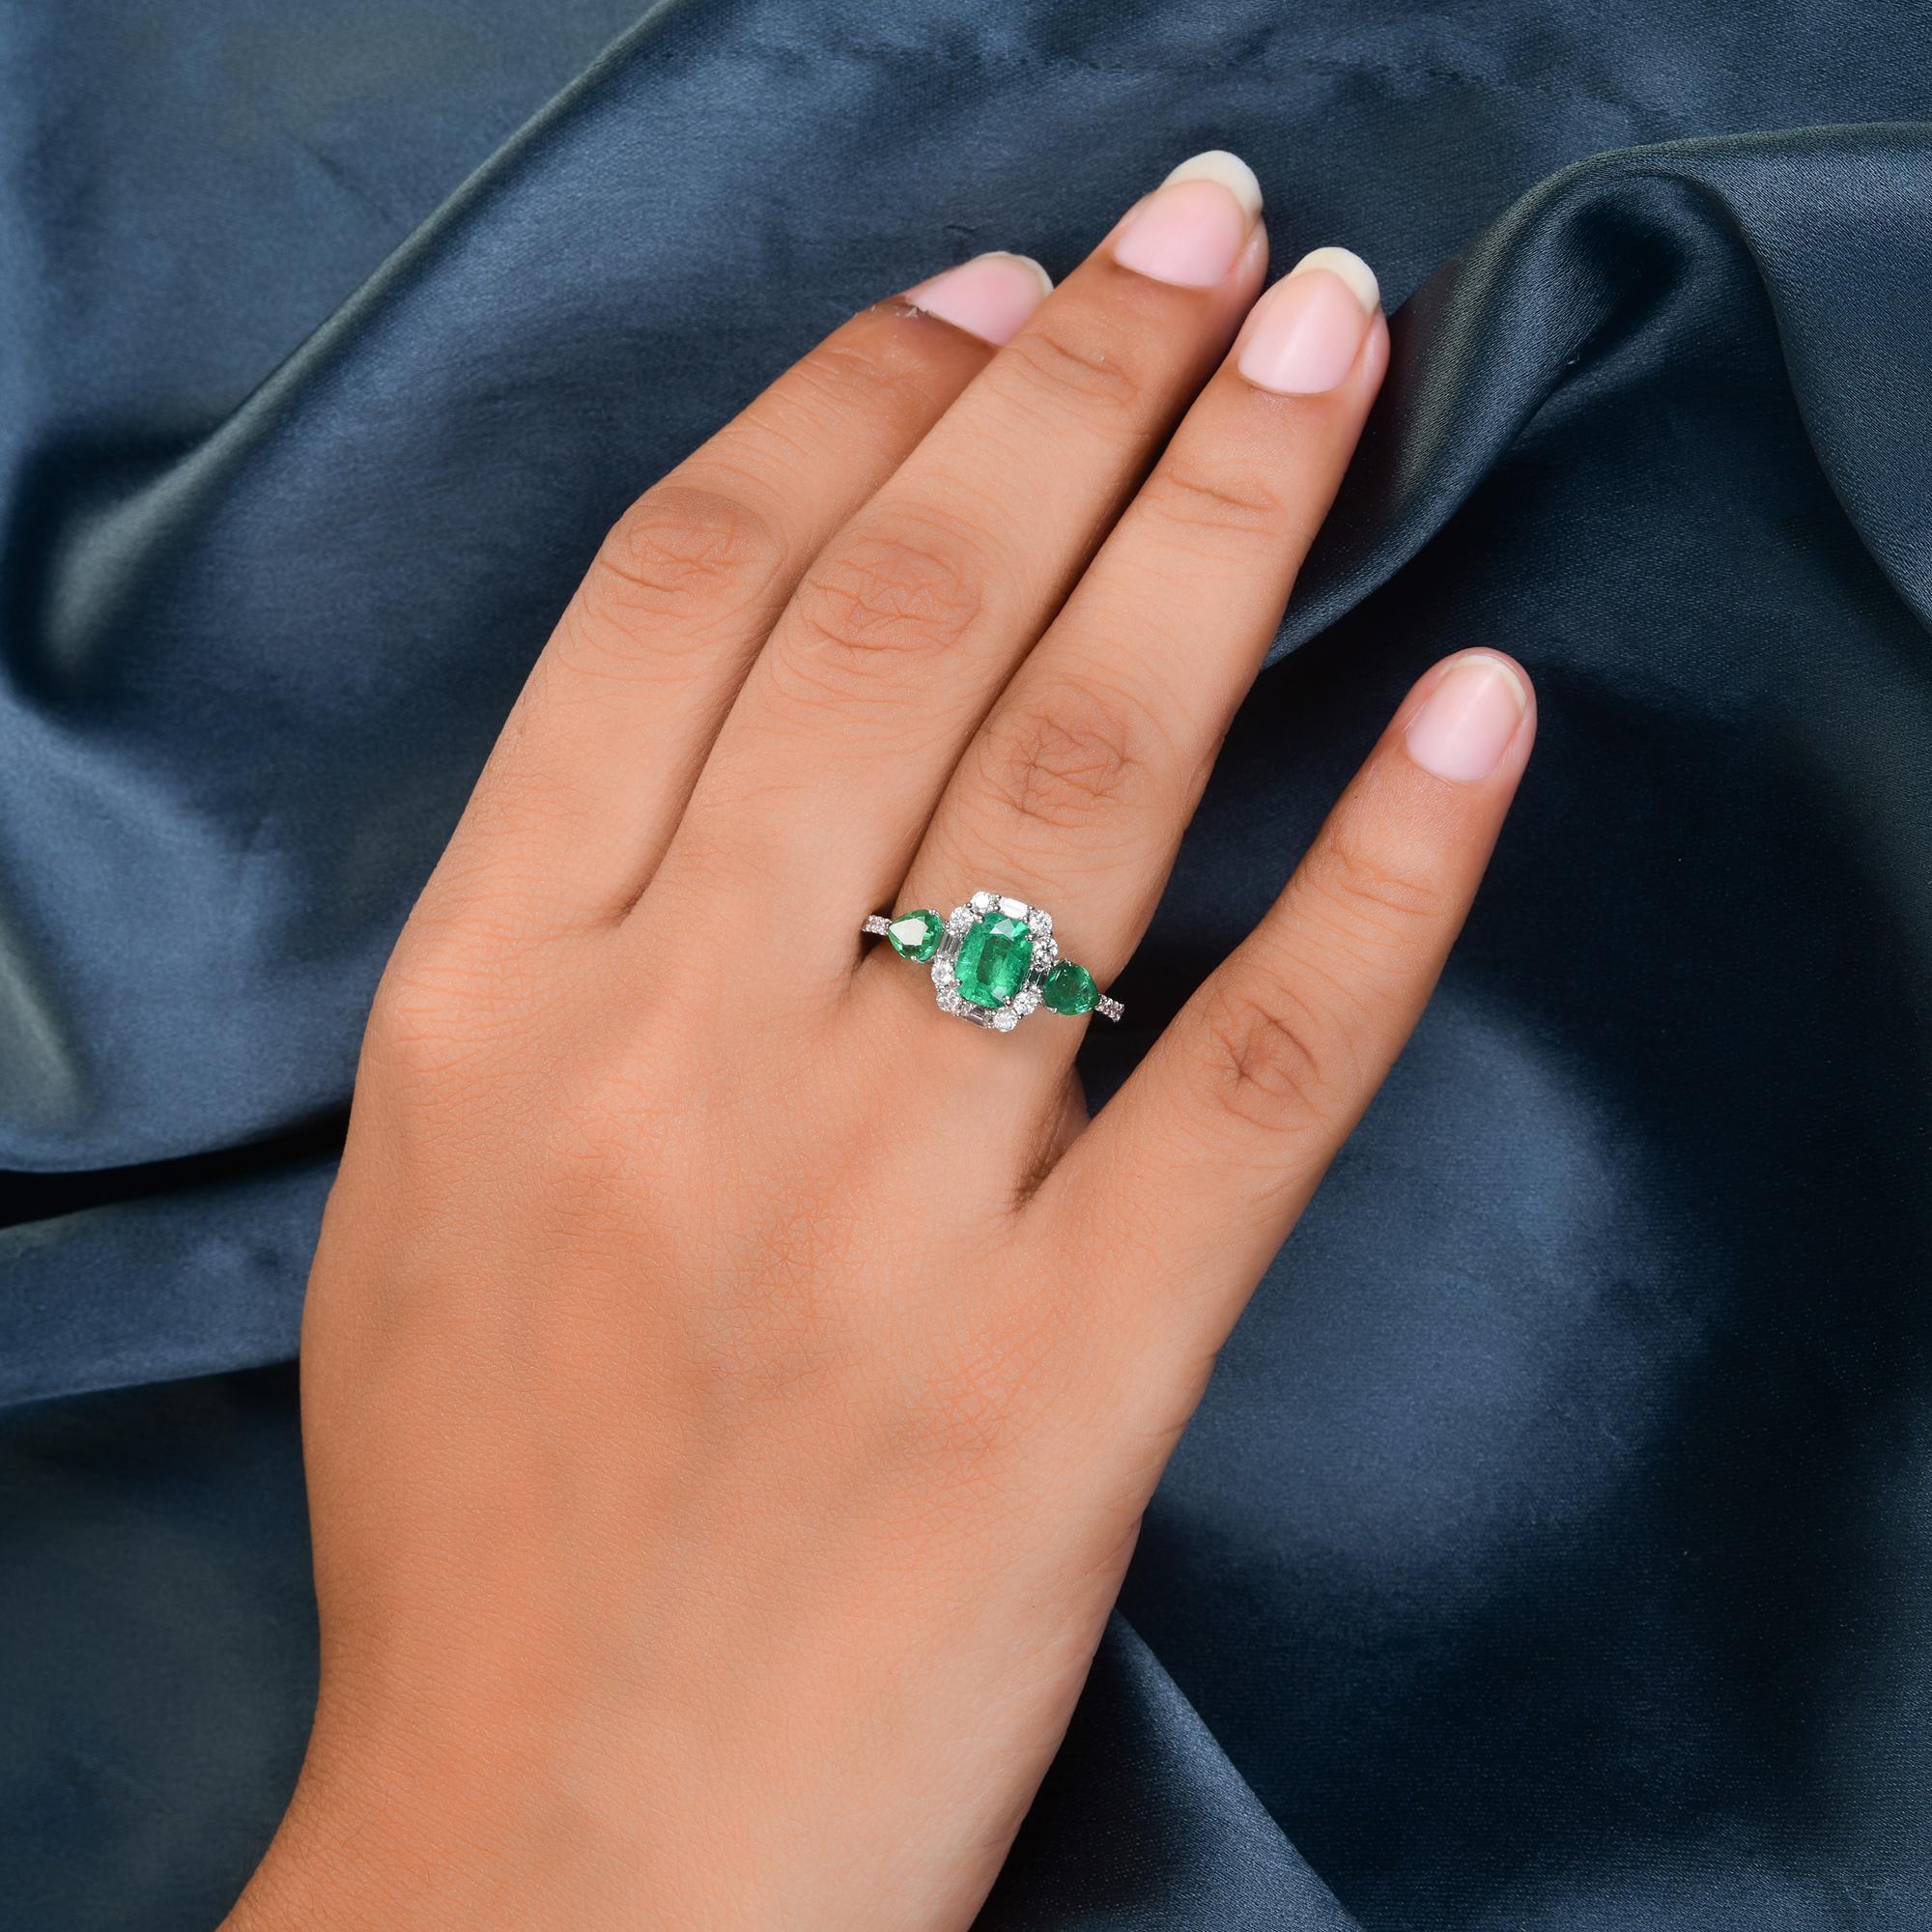 Women's Zambian Emerald Gemstone Ring Diamond 18 Karat White Gold Handmade Jewelry For Sale